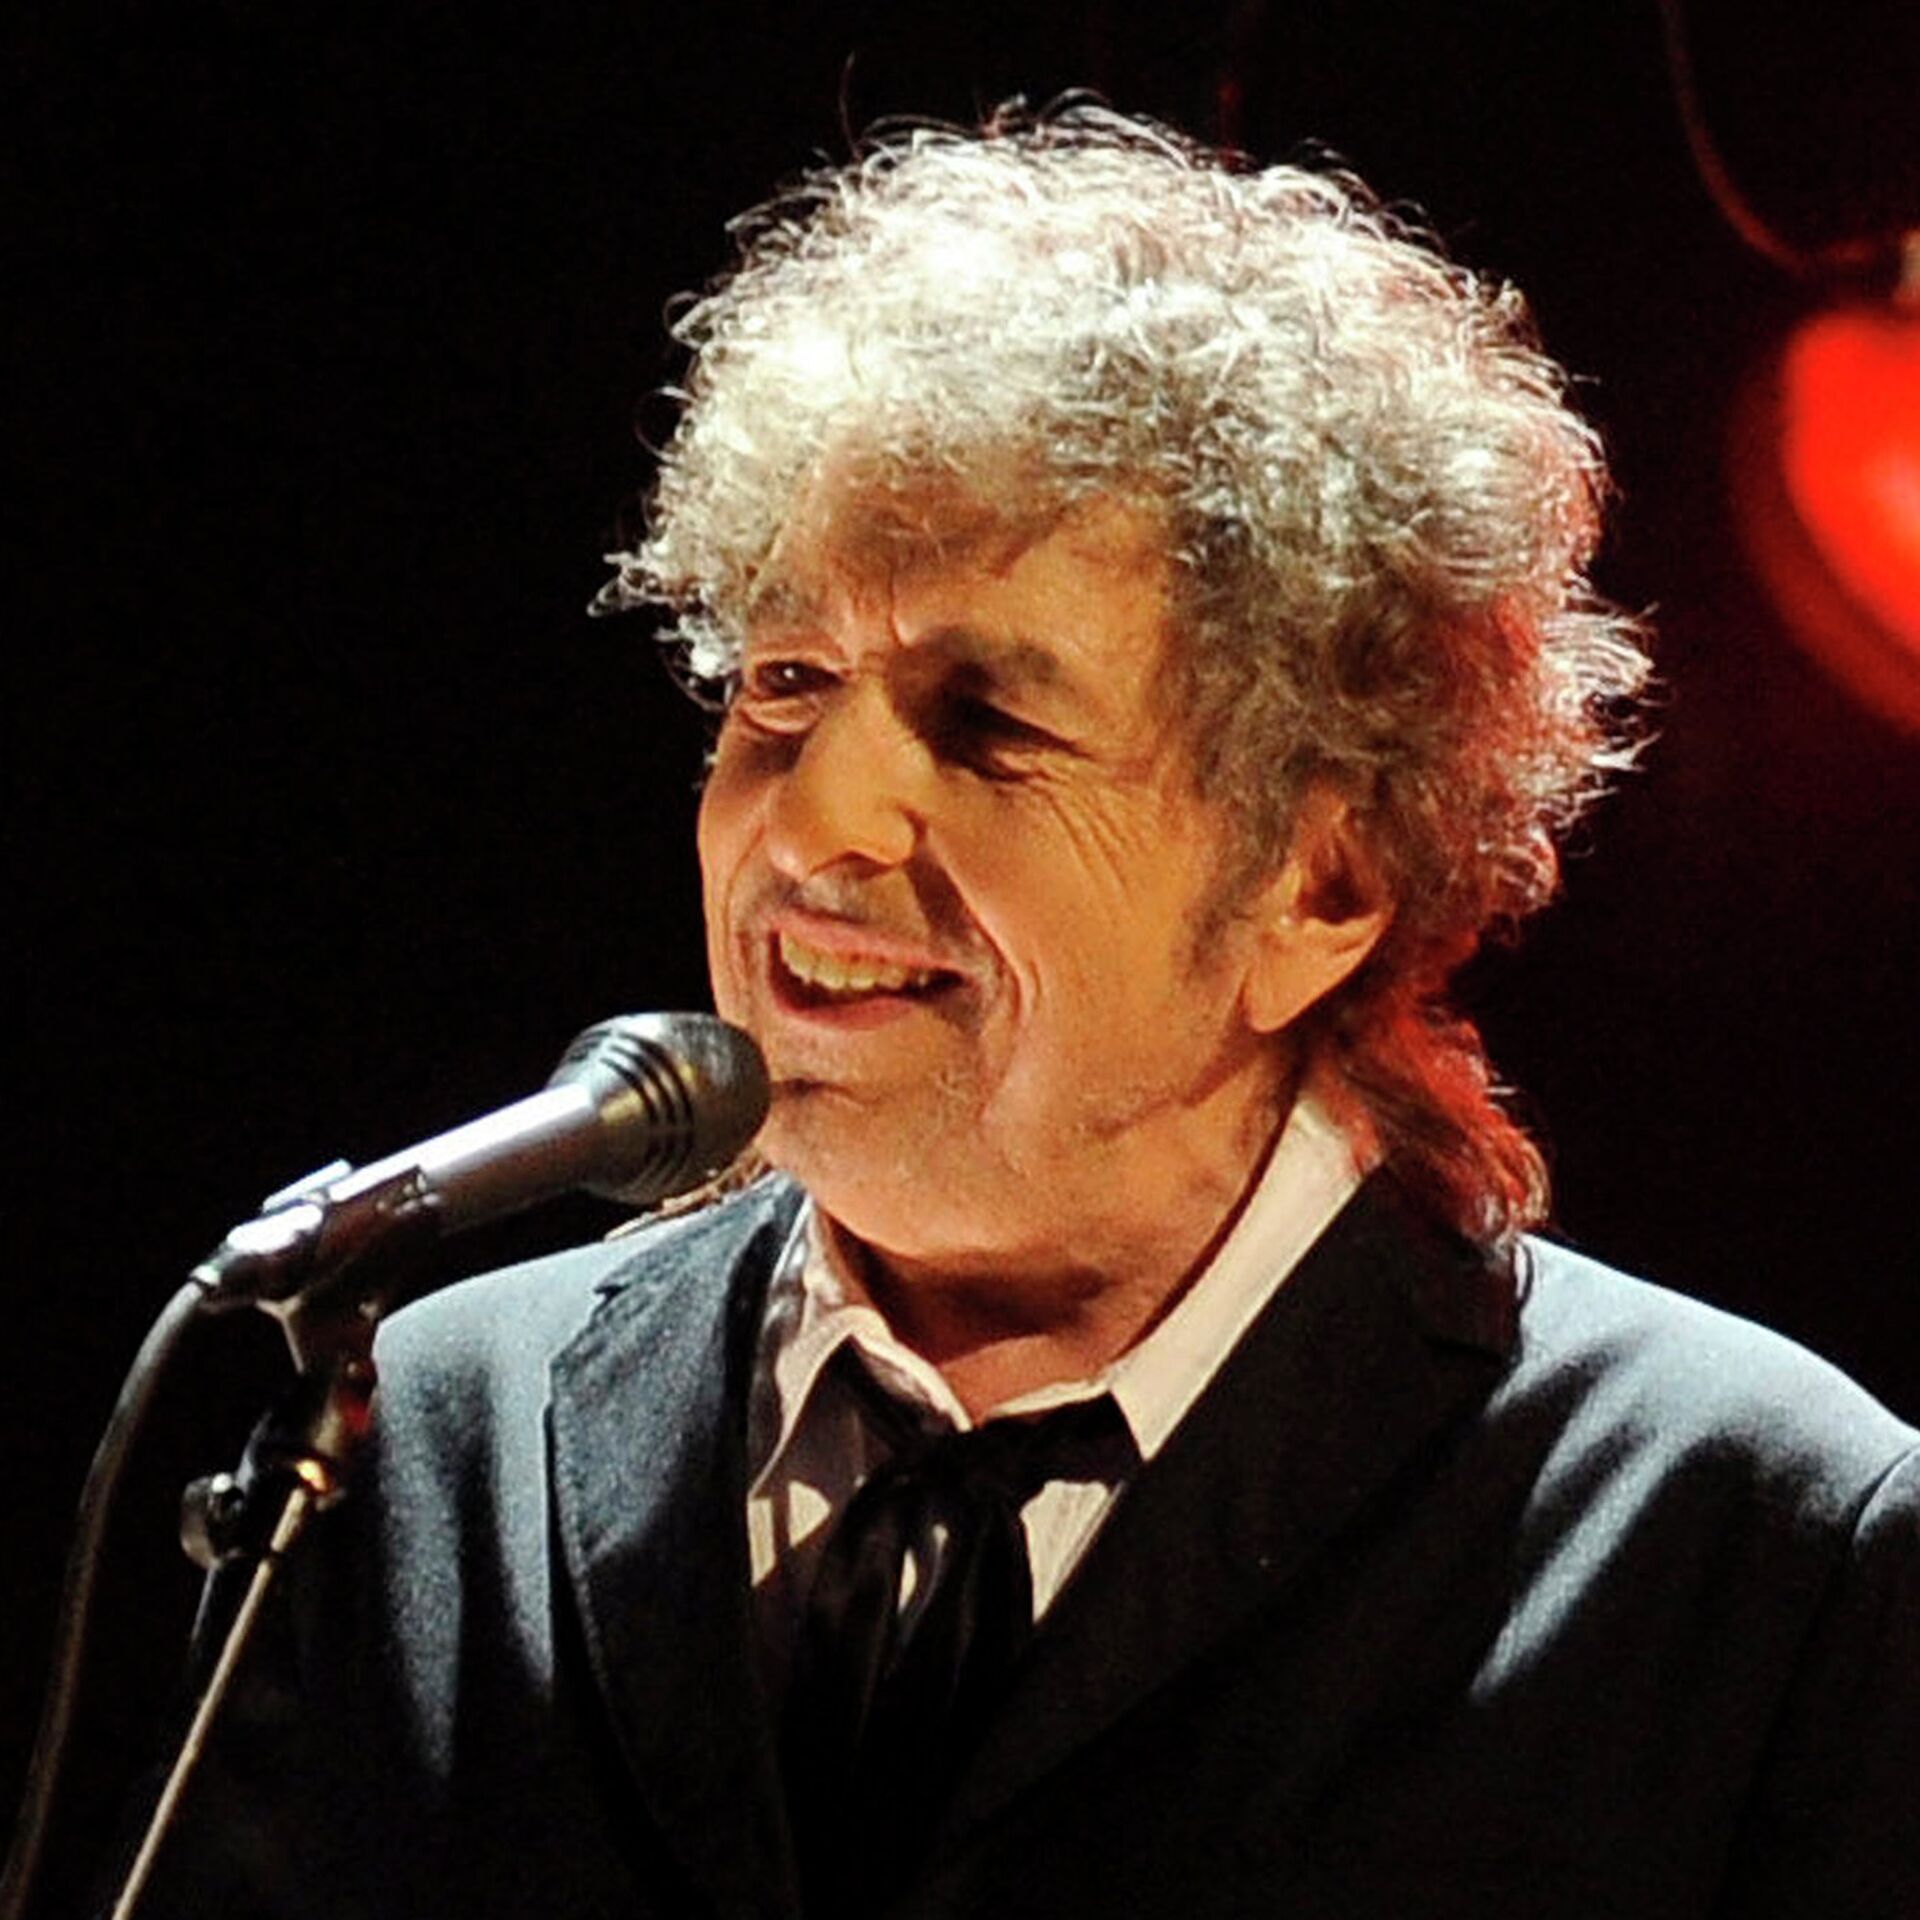 Боб Дилан помог литературной нобелевской премии восстановить репутацию -  РИА Новости, 26.05.2021